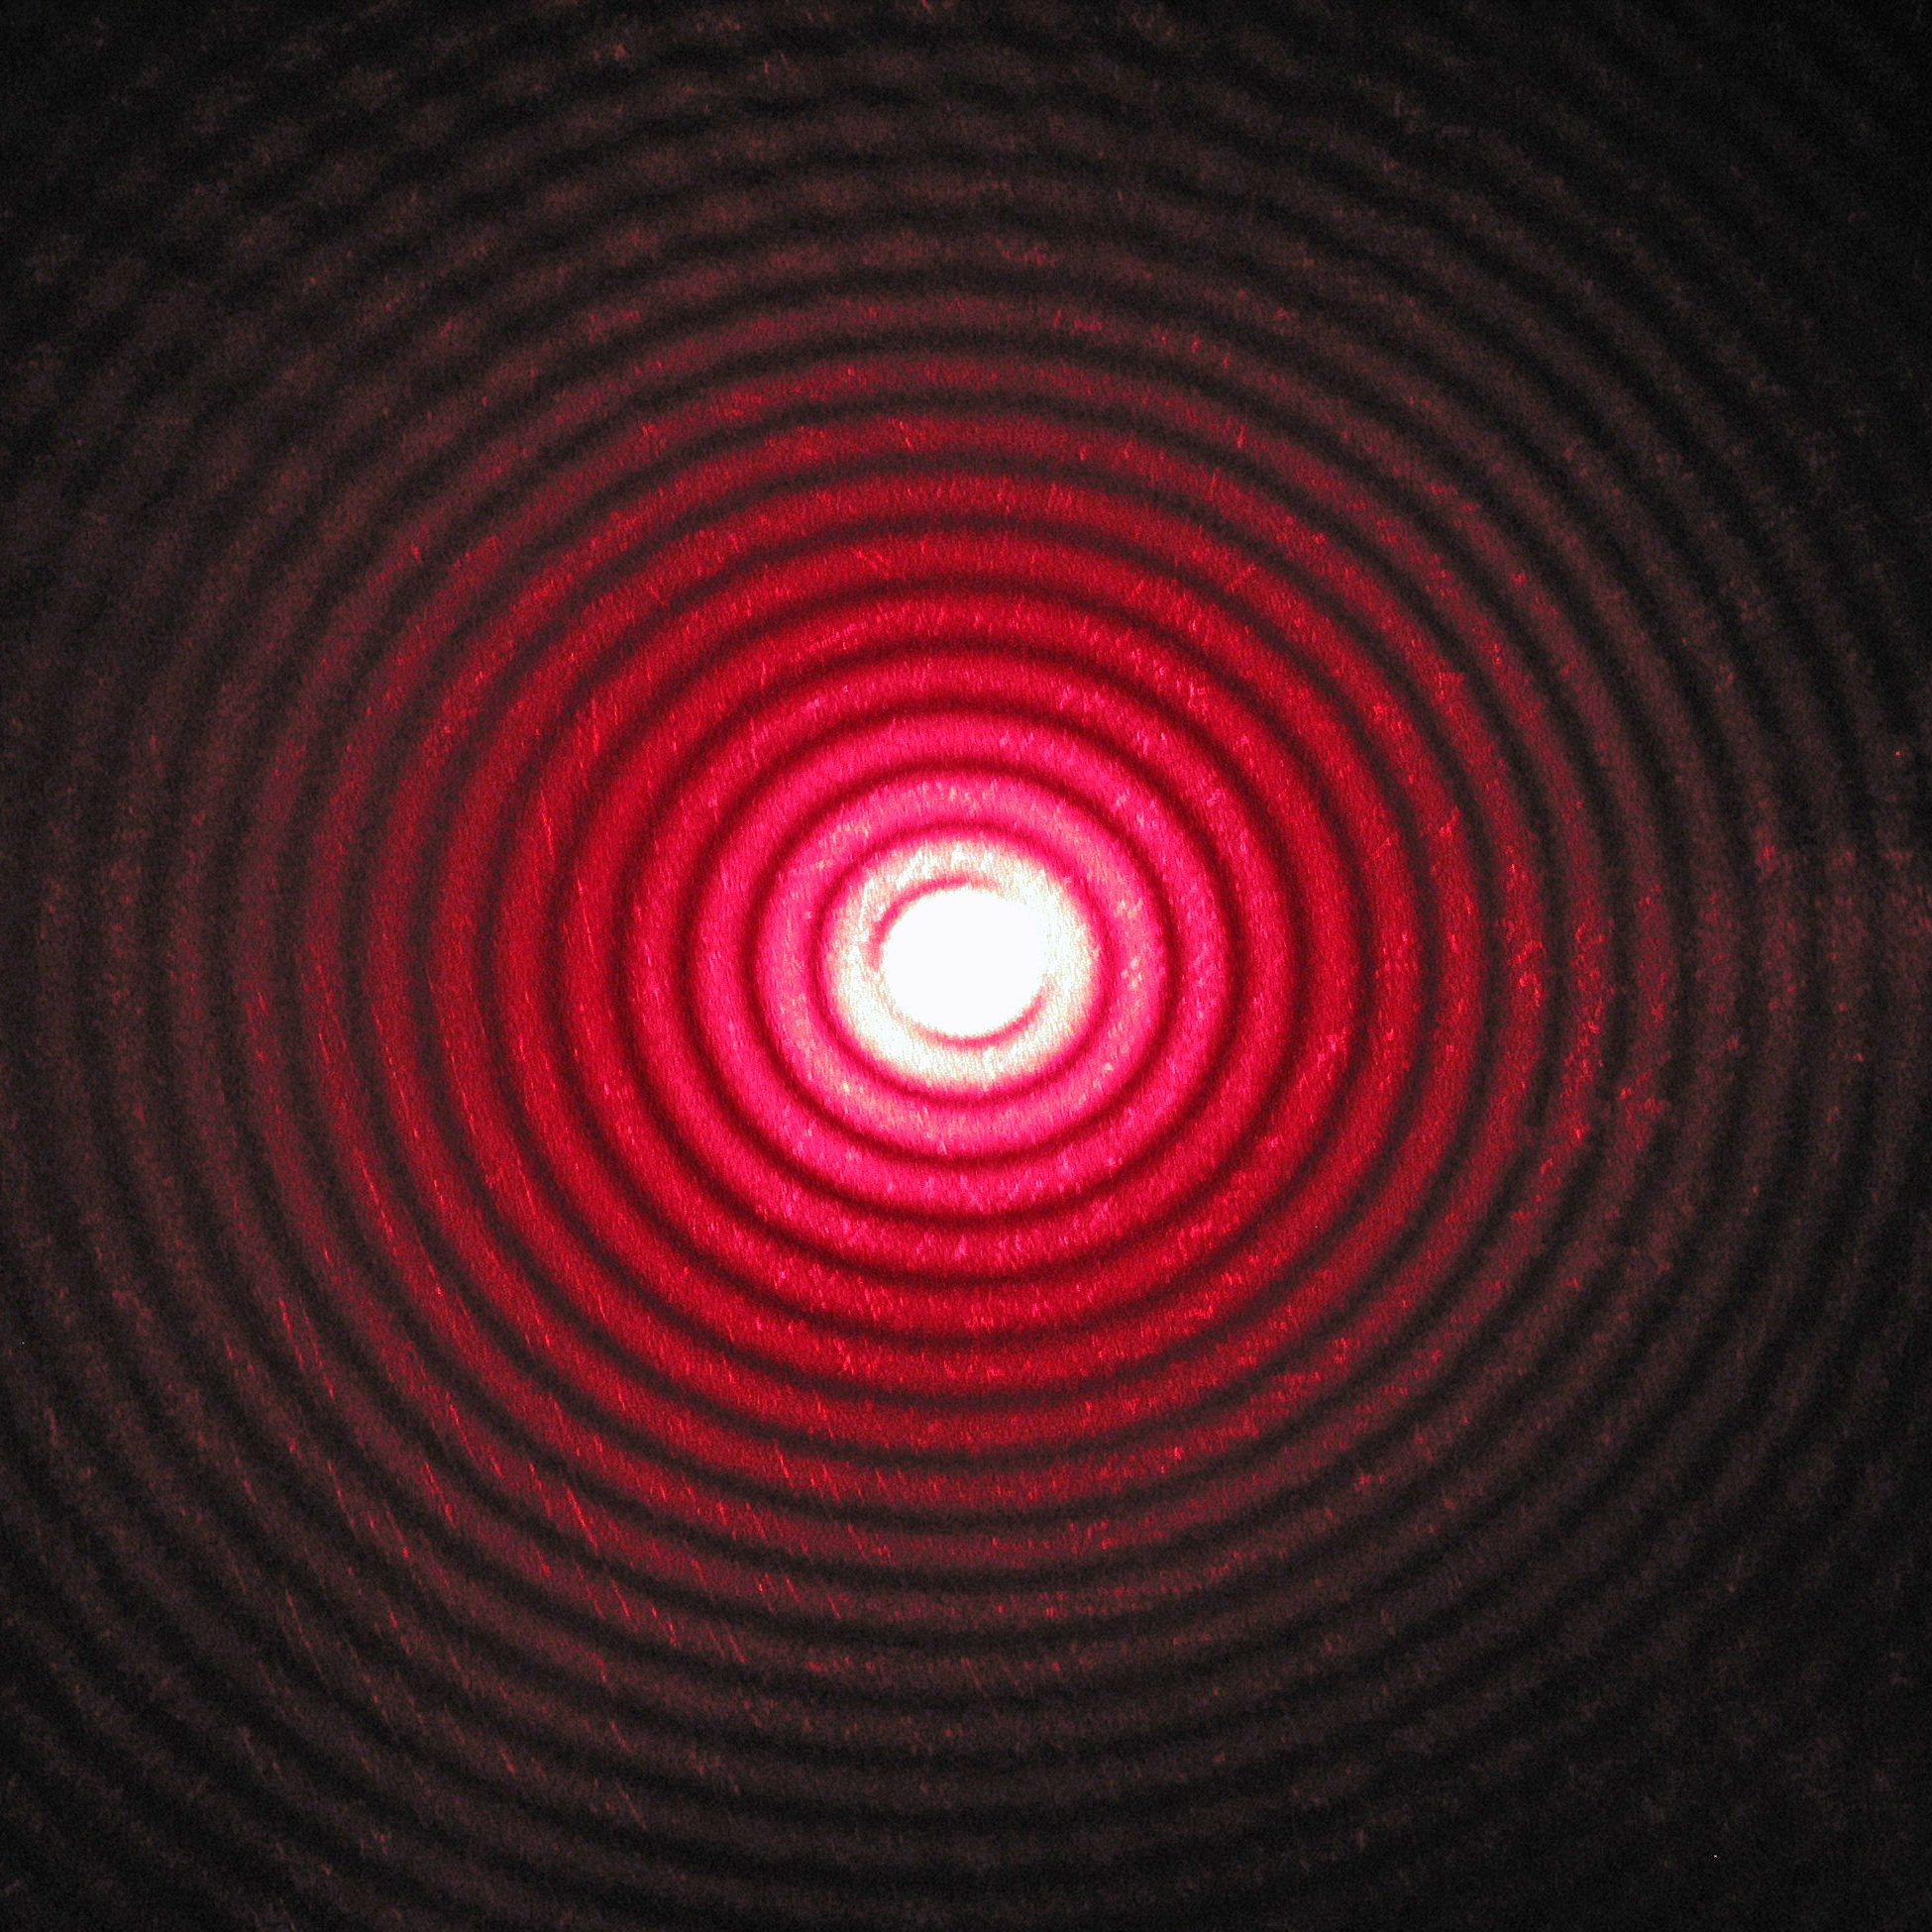 Дифракция лазерного луча с длиной волны 650 нм, прошедшего через отверстие диаметром 0,2 мм.